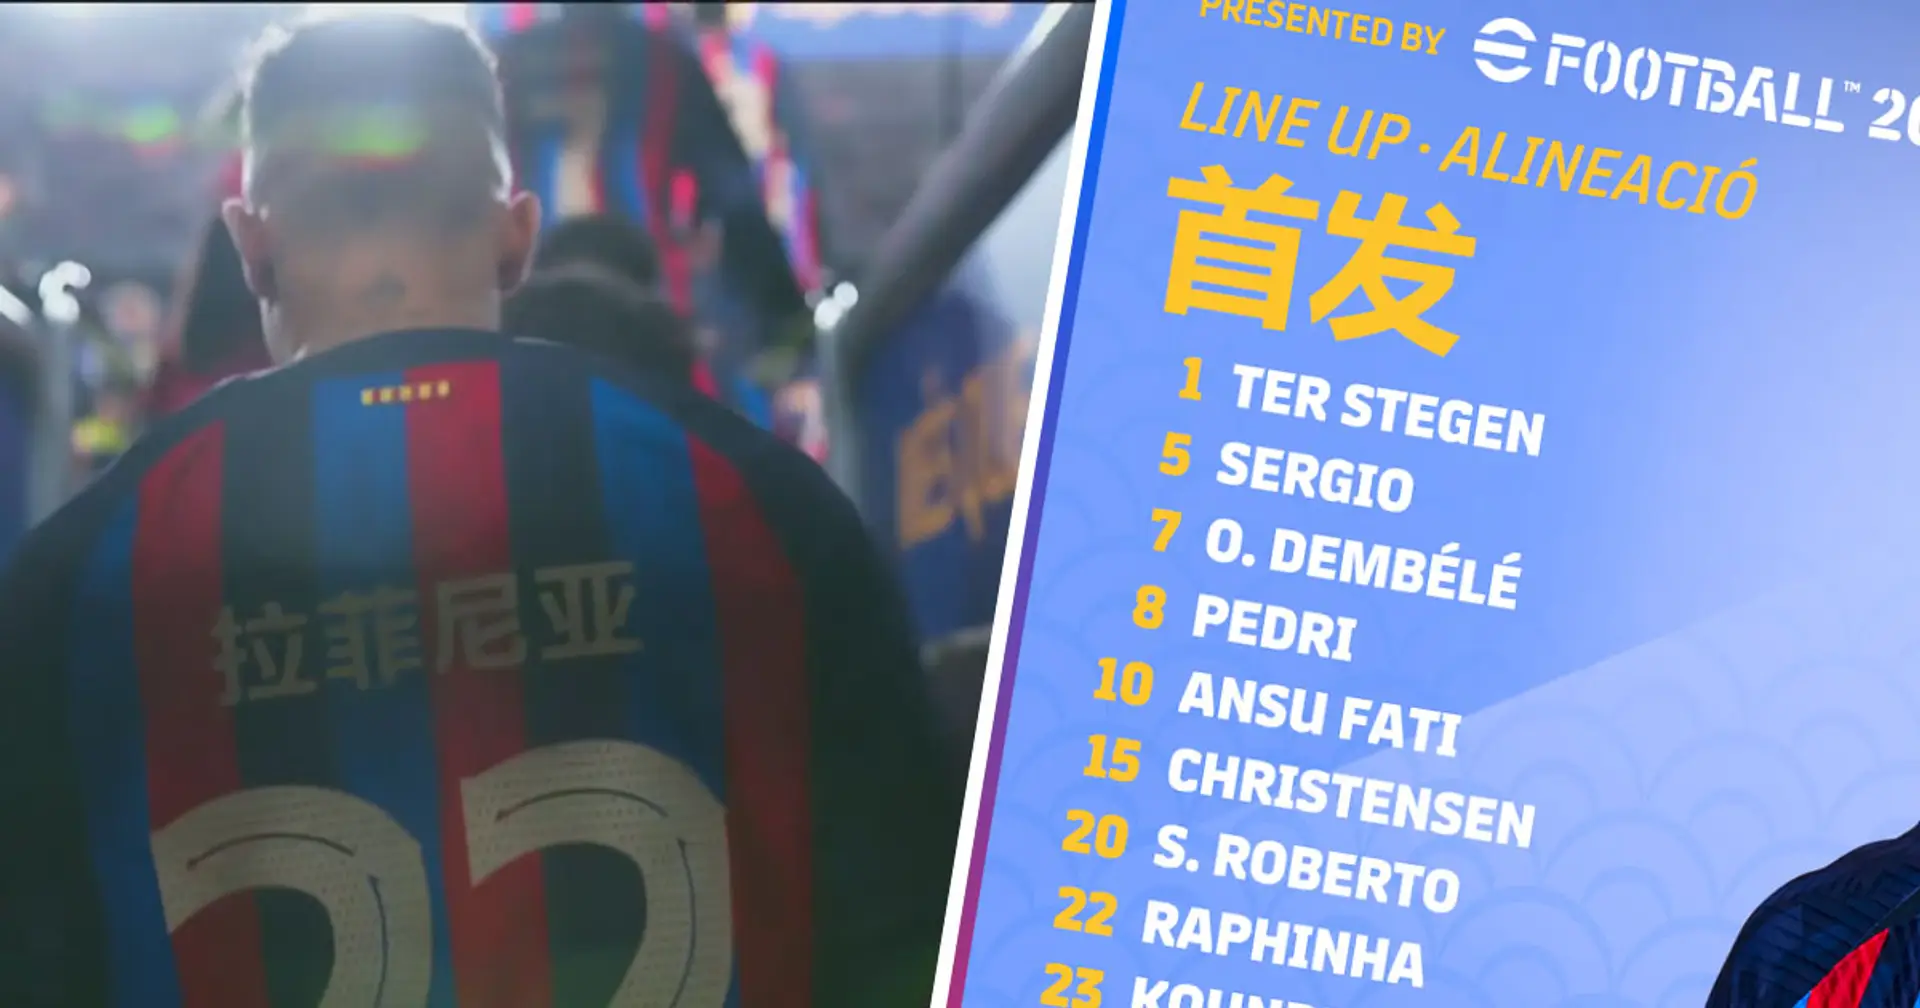 Pourquoi les joueurs du Barça avaient leurs noms écrits en chinois avant le match contre Getafe - Explication